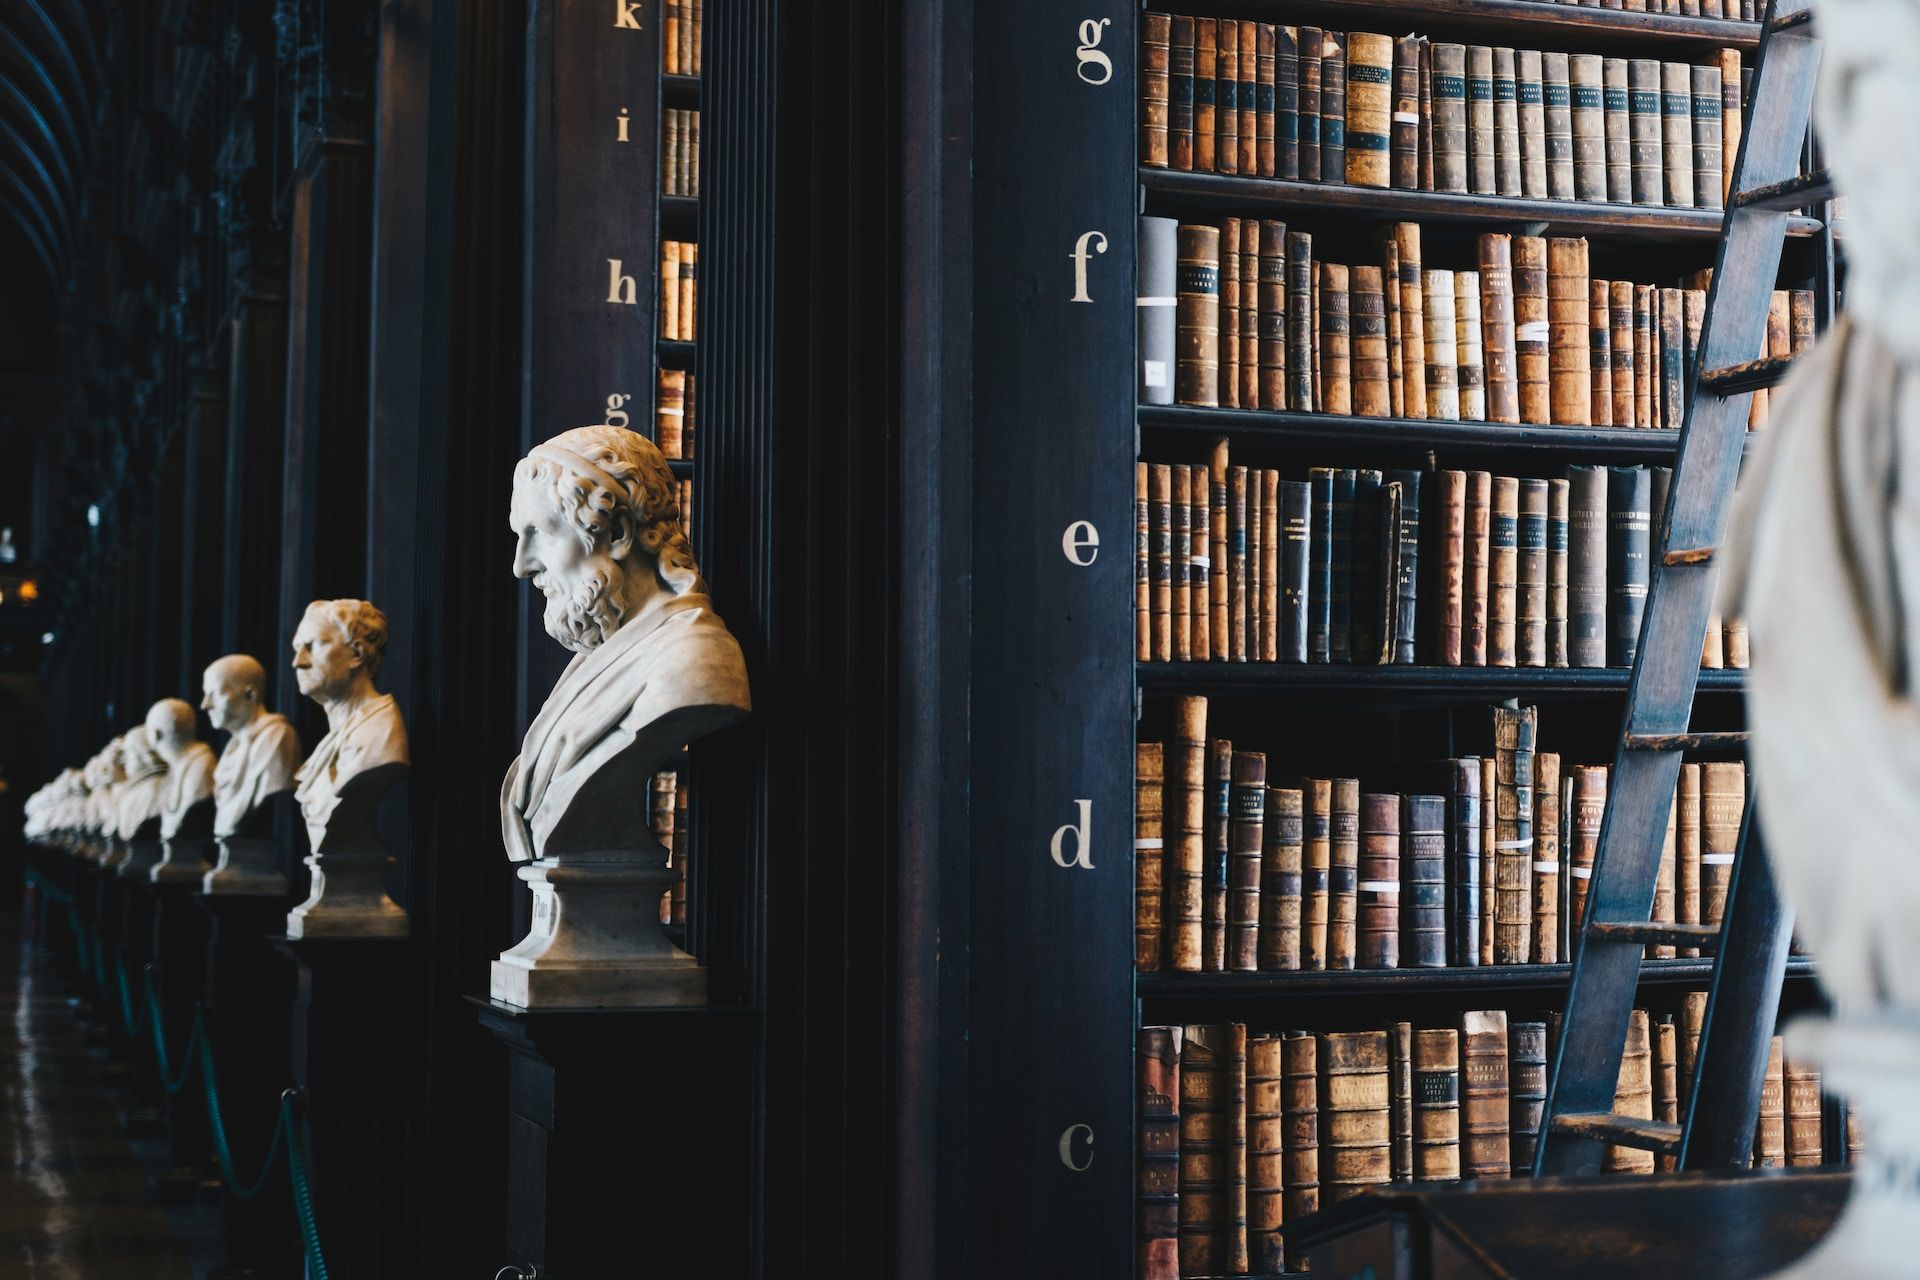 Une bibliothÃ¨que ancienne (Ã  Dublin) avec des bustes de philosophes - Photo de Giammarco Boscaro sur https://unsplash.com/fr/photos/lot-de-livres-sur-etagere-en-bois-noir-zeH-ljawHtg